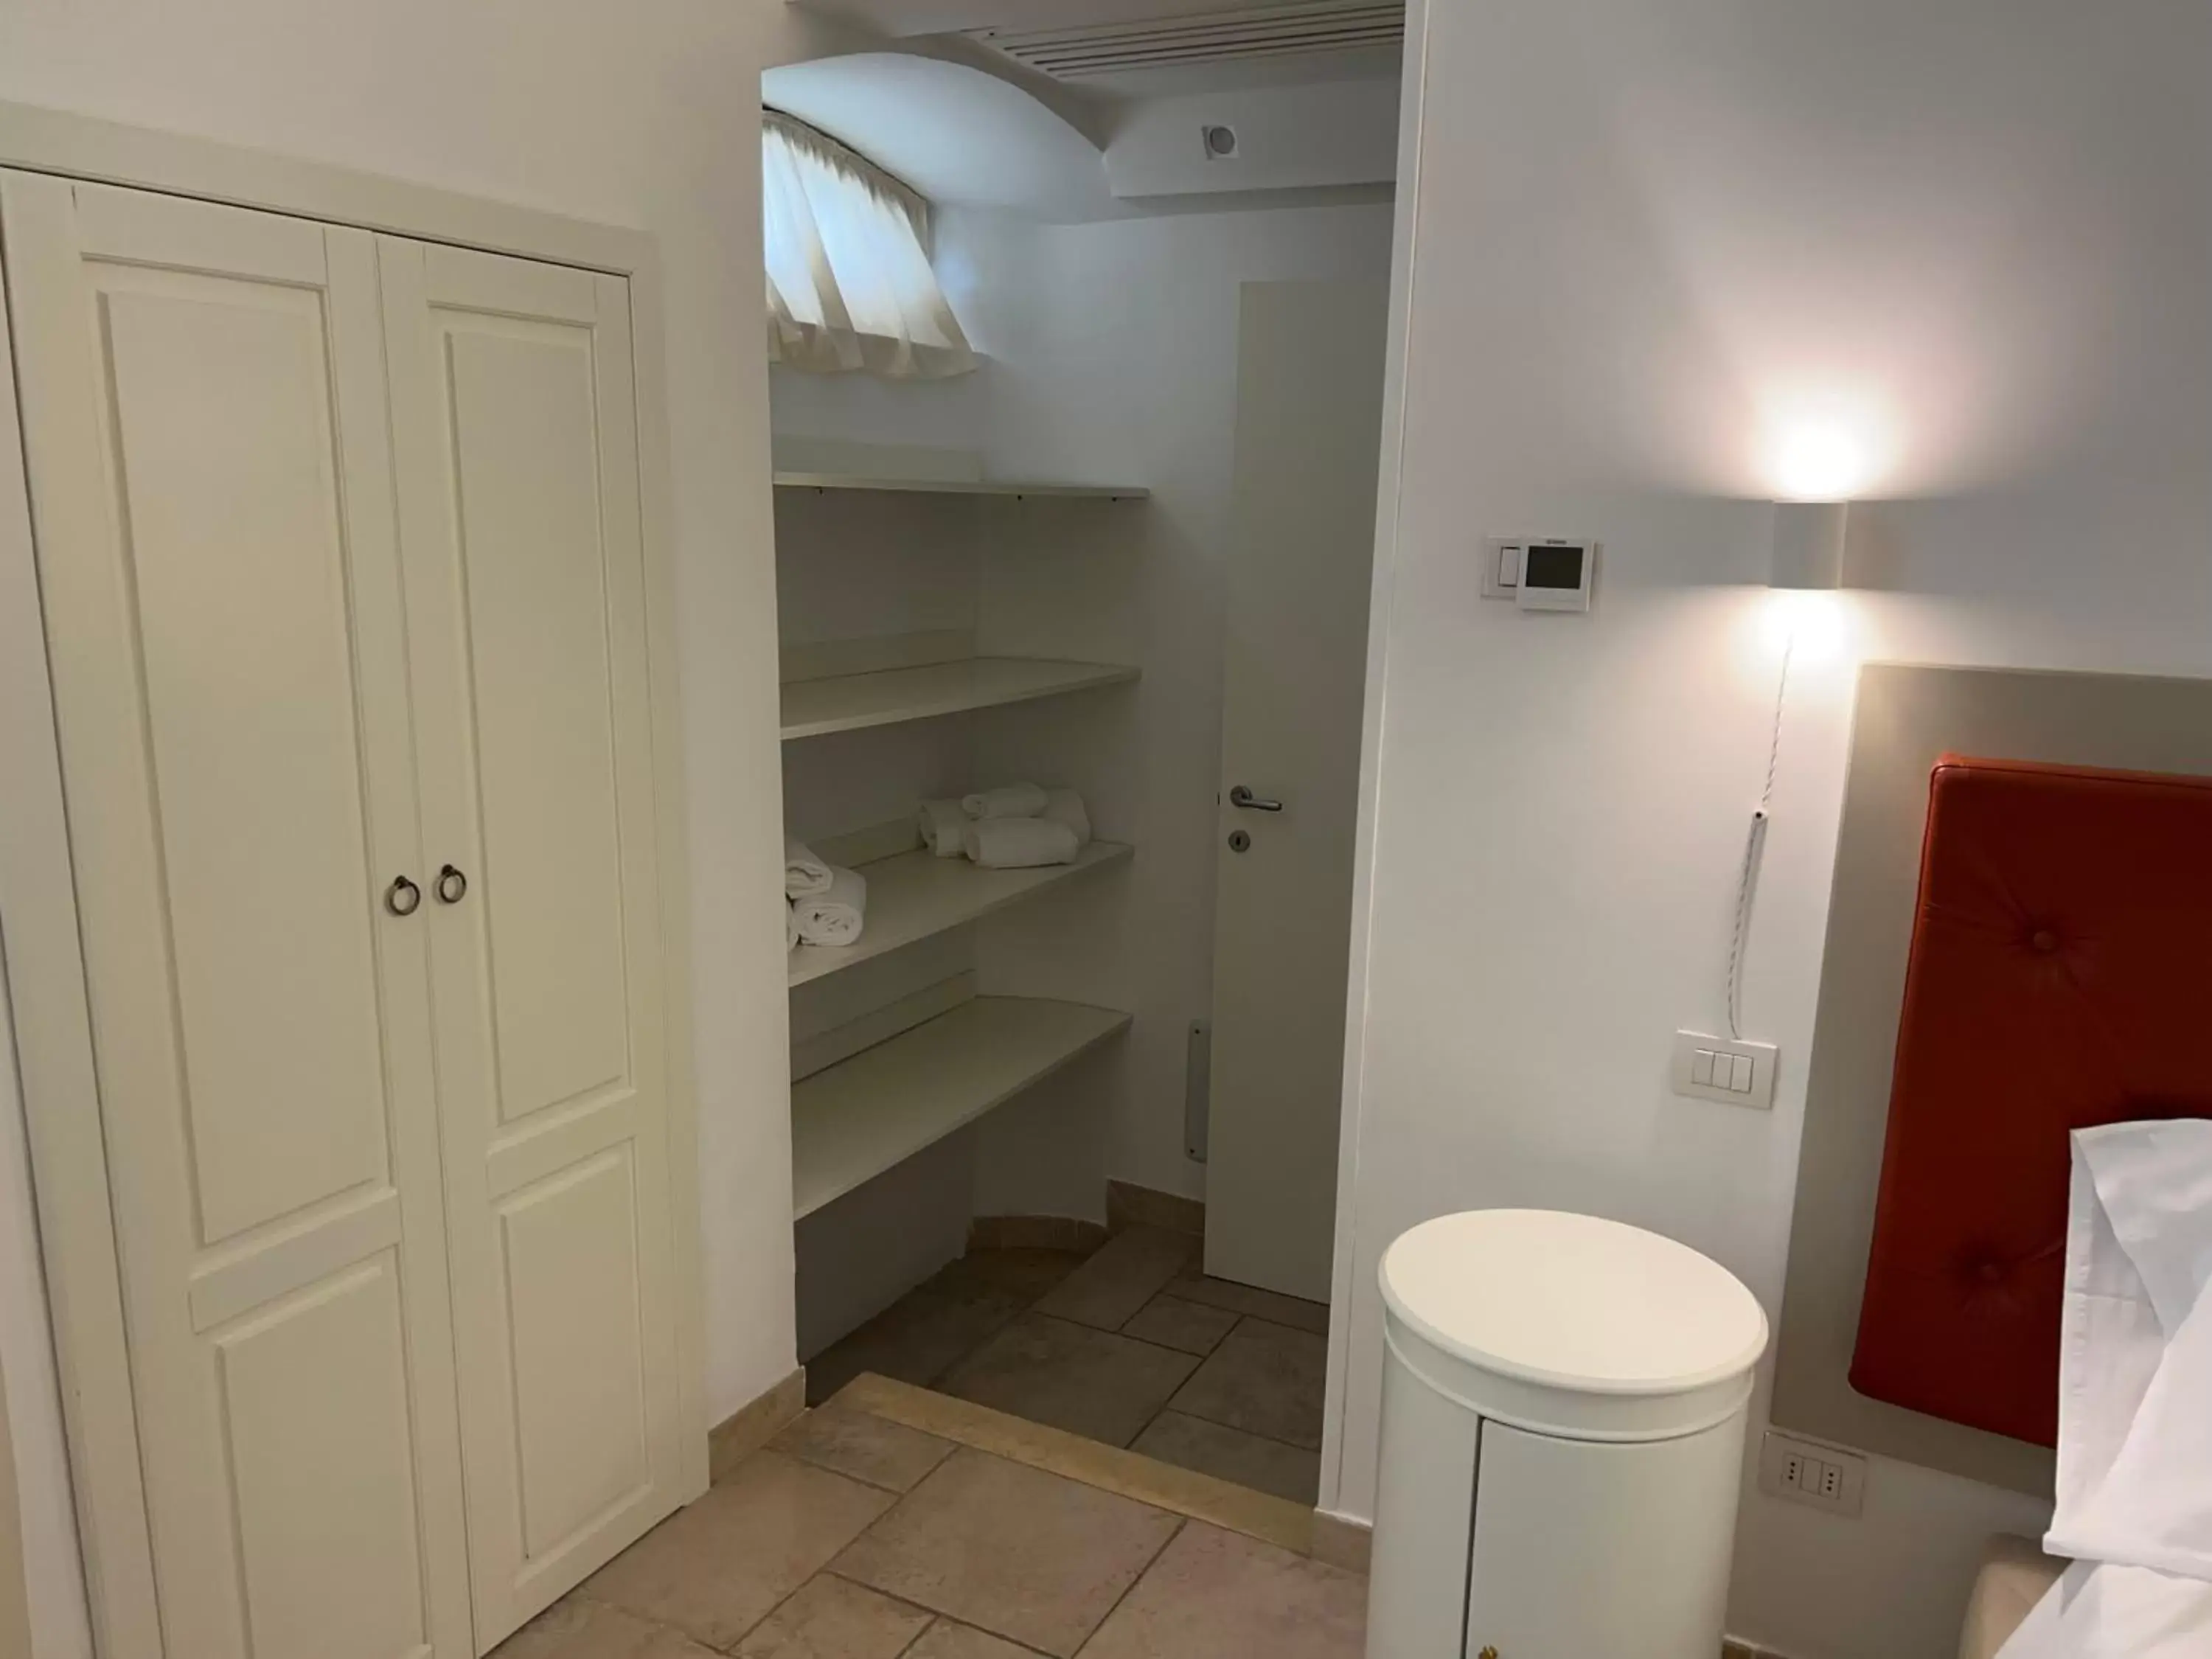 wardrobe, Bathroom in Sogno D'Epoca 1822